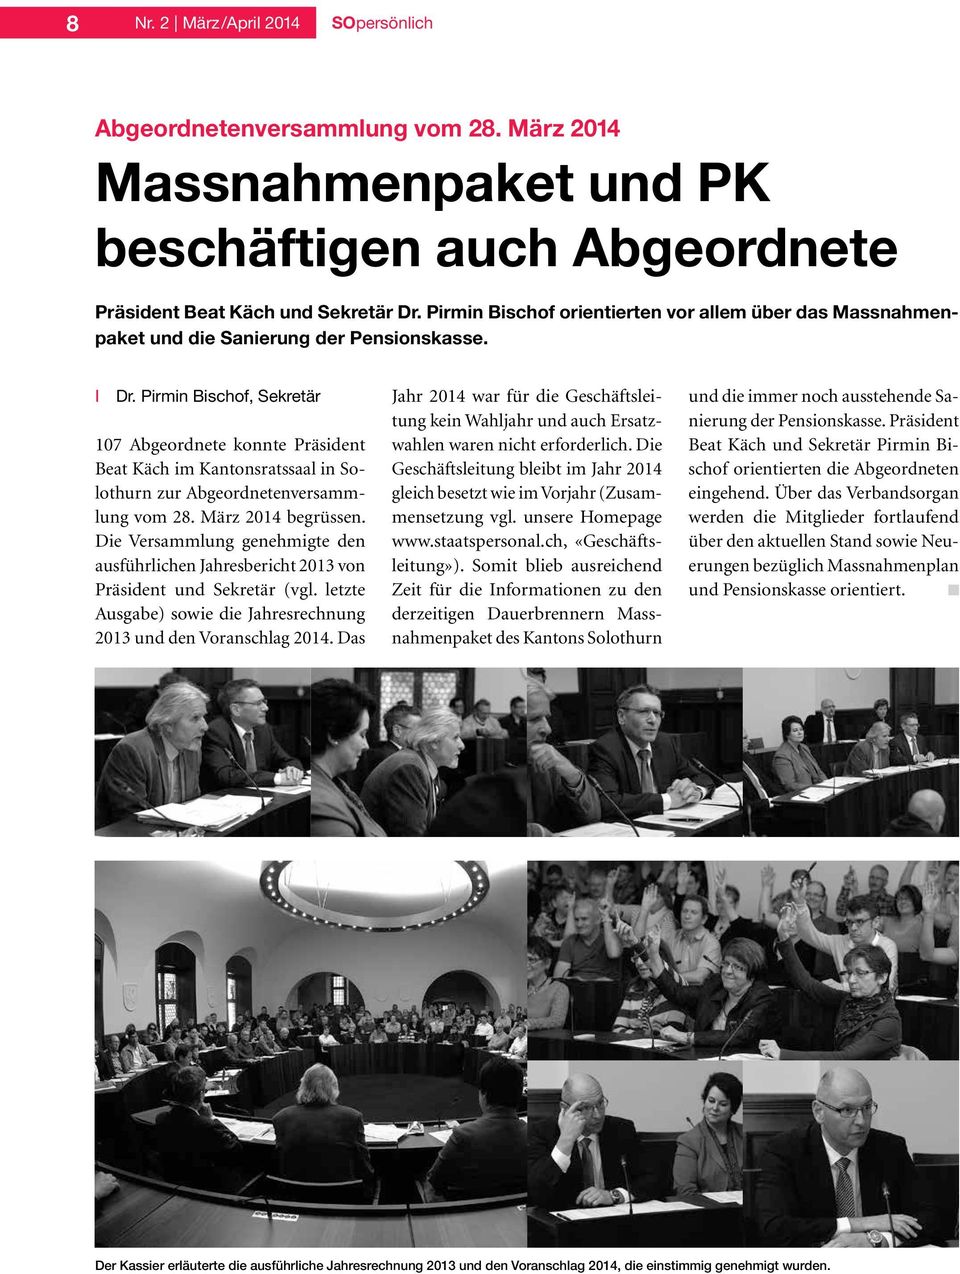 Pirmin Bischof, Sekretär 107 Abgeordnete konnte Präsident Beat Käch im Kantonsratssaal in Solothurn zur Abgeordnetenversammlung vom 28. März 2014 begrüssen.